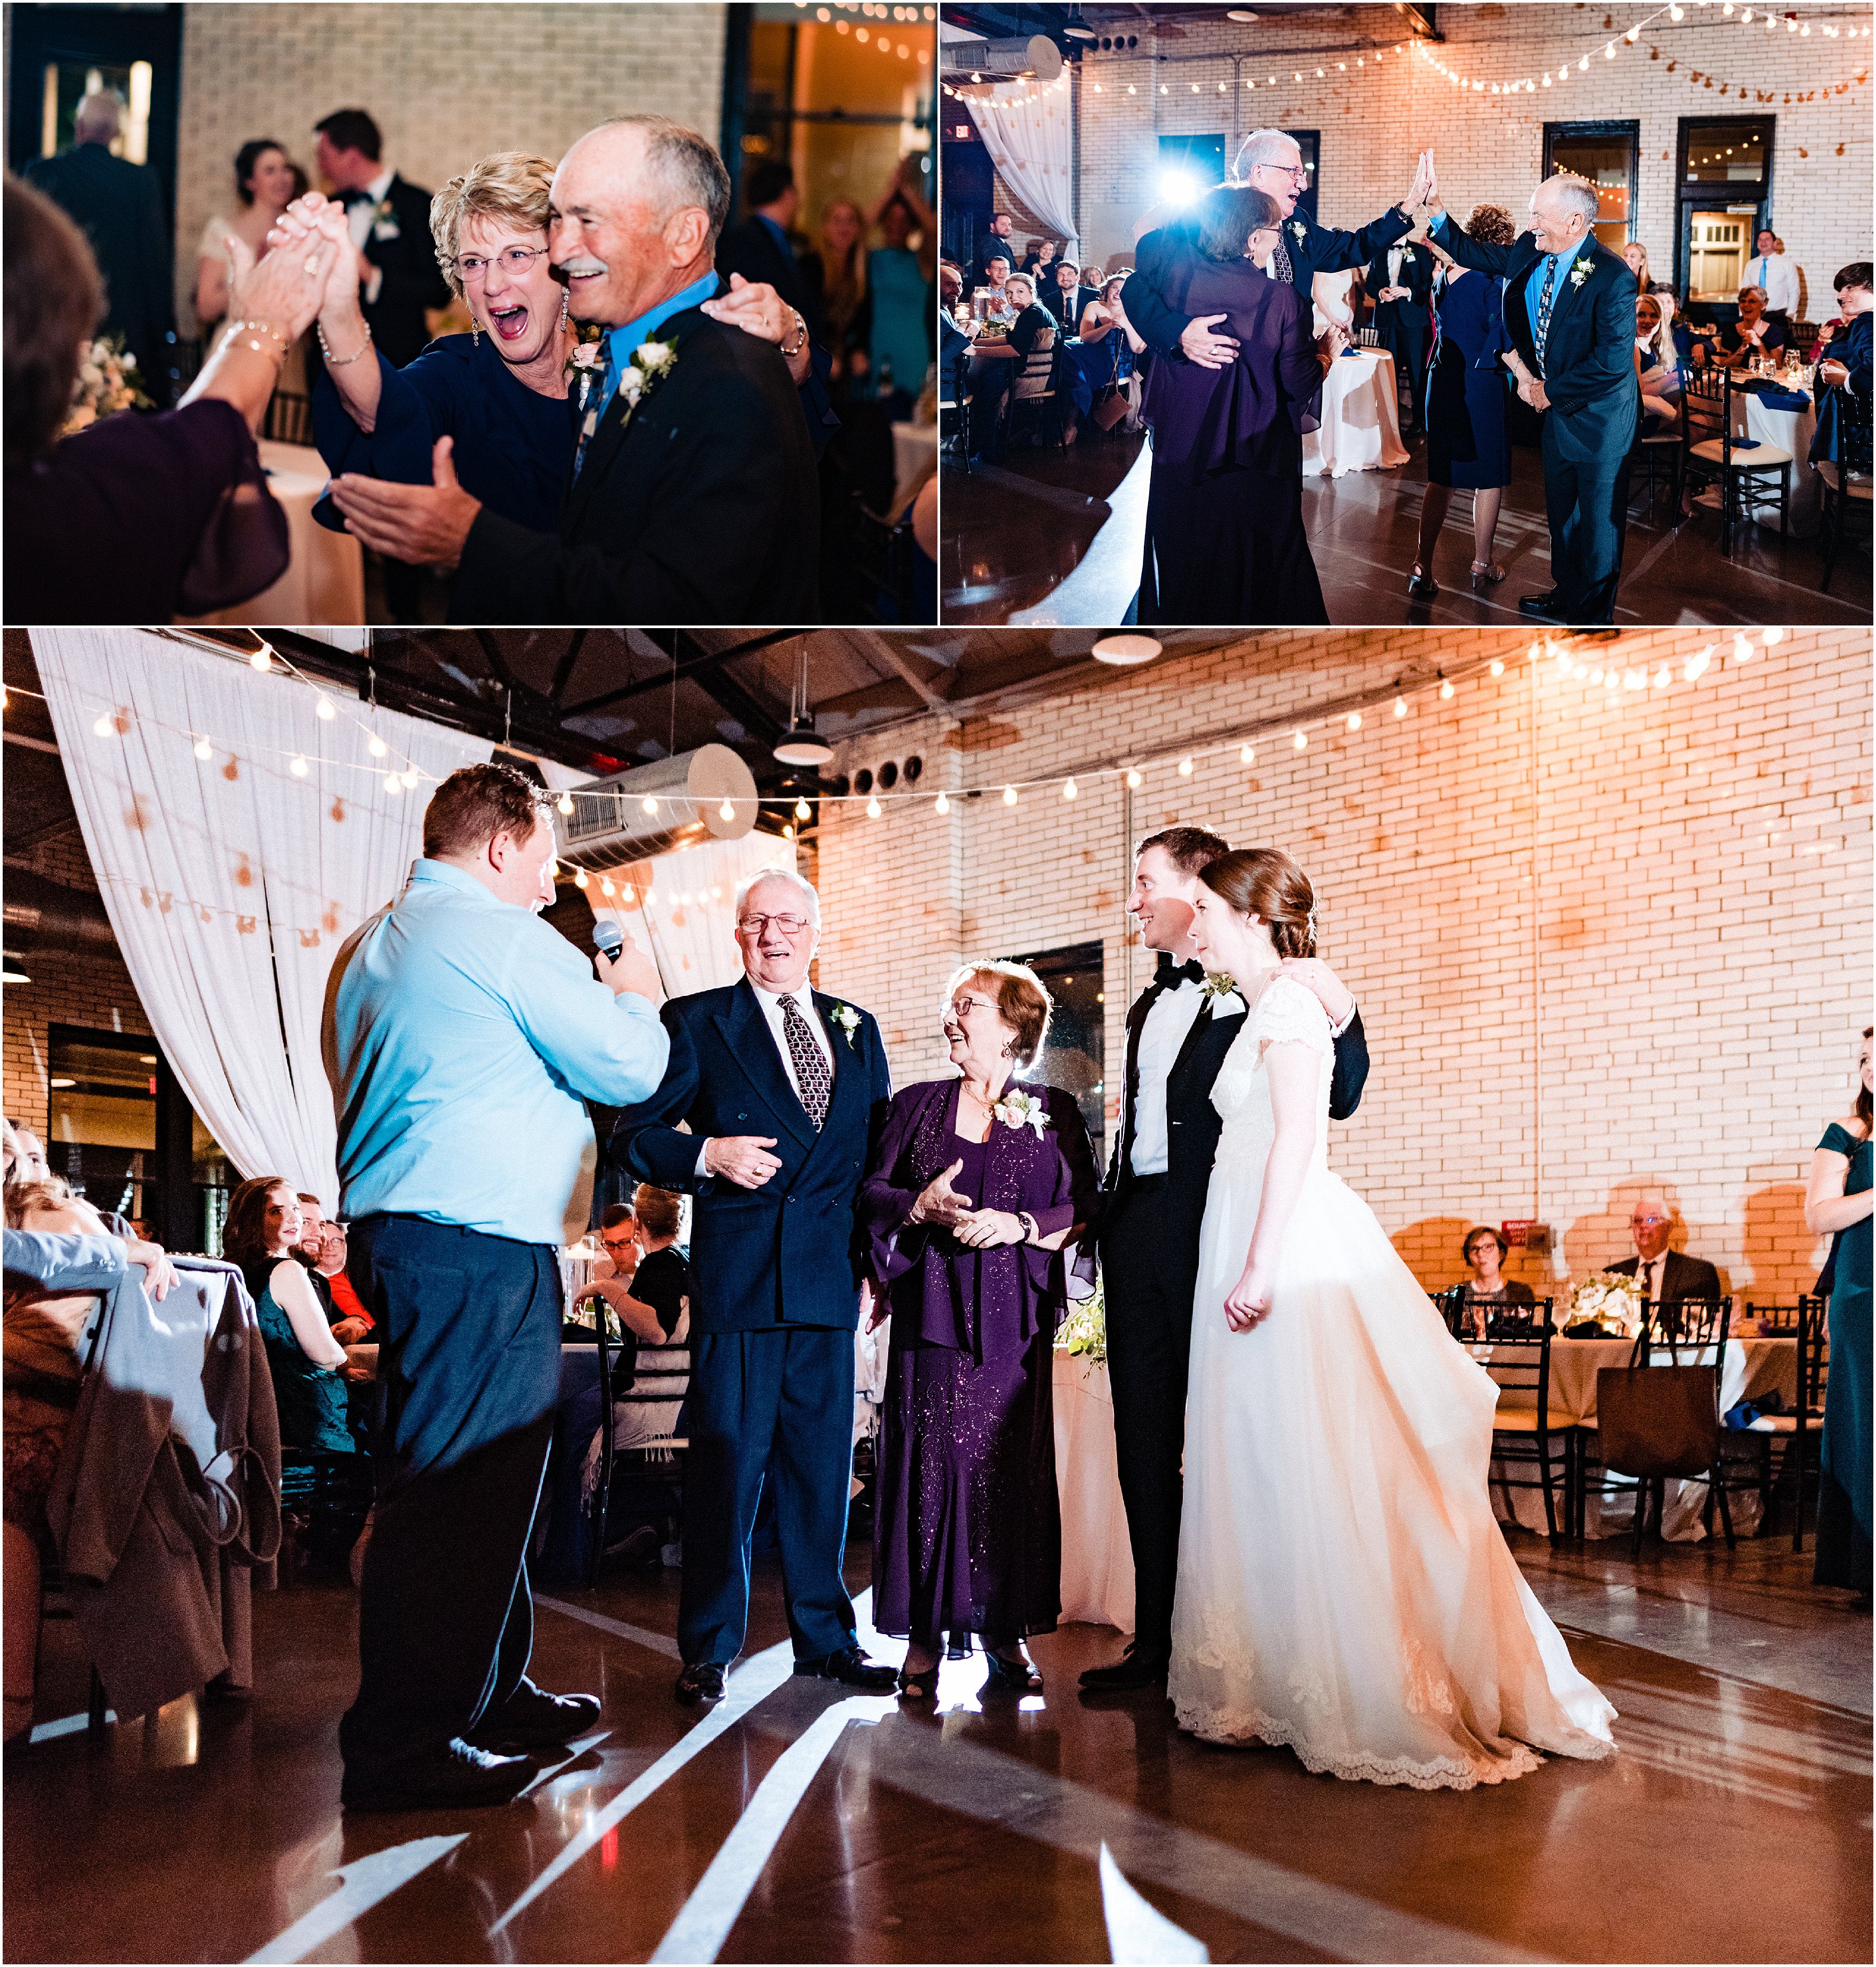 Anniversary dance - married 60+ years